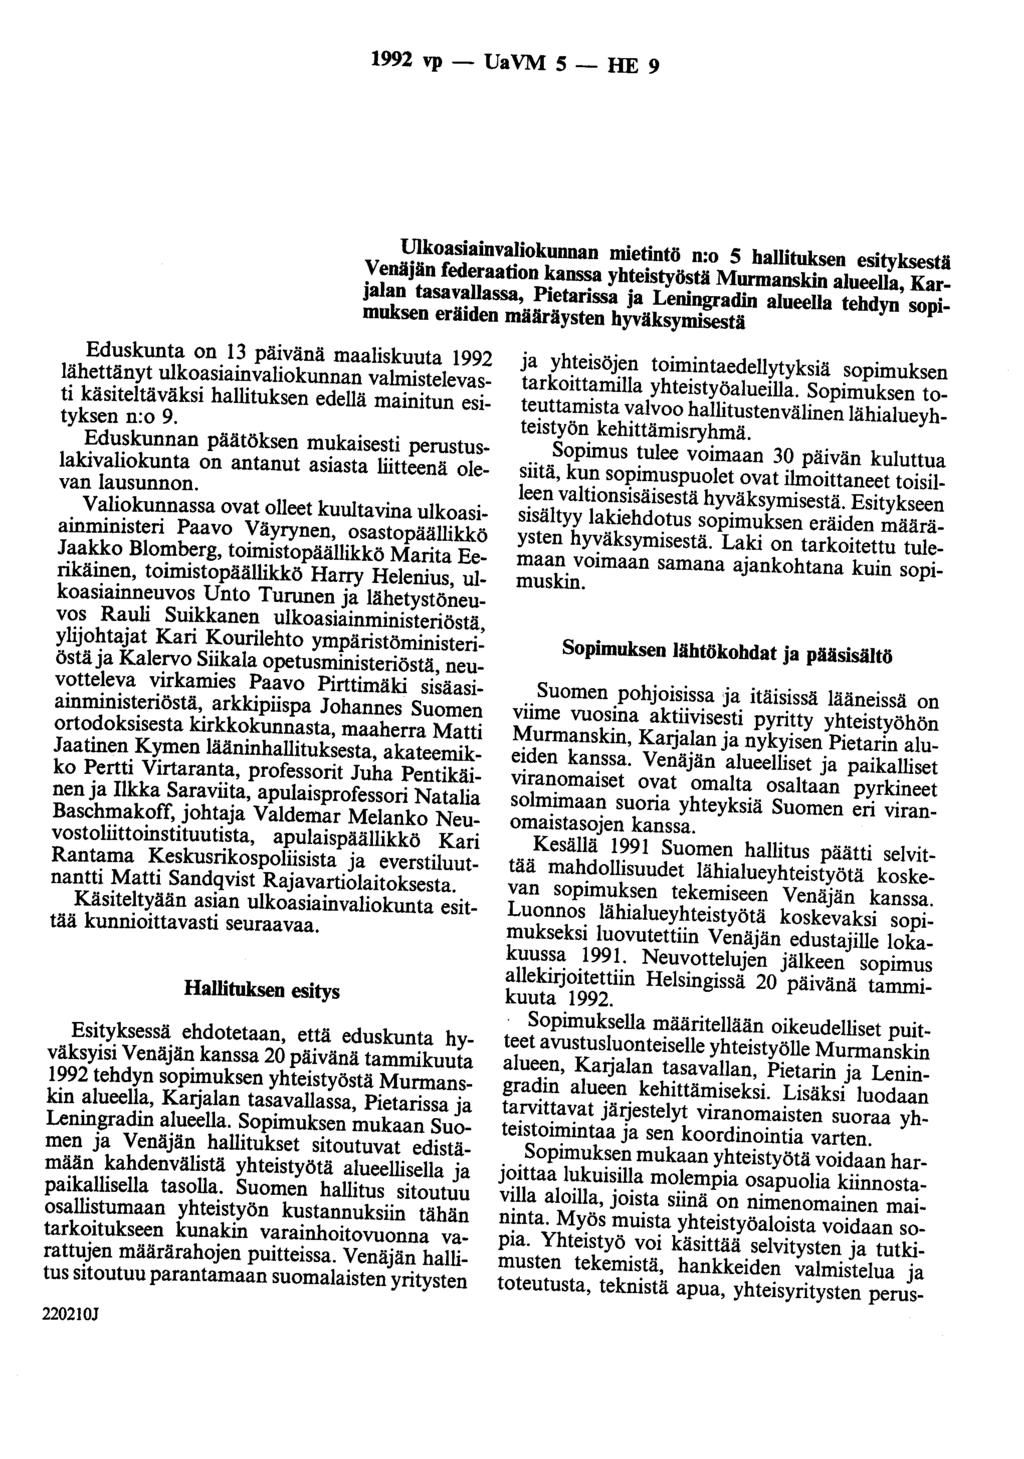 1992 vp - Ua VM 5 - HE 9 Ulkoasiainvaliokunnan mietintö n:o 5 hallituksen esityksestä Venäjän federaation kanssa yhteistyöstä Murmanskin alueella, Karjalan tasavallassa, Pietarissa ja Leningradin